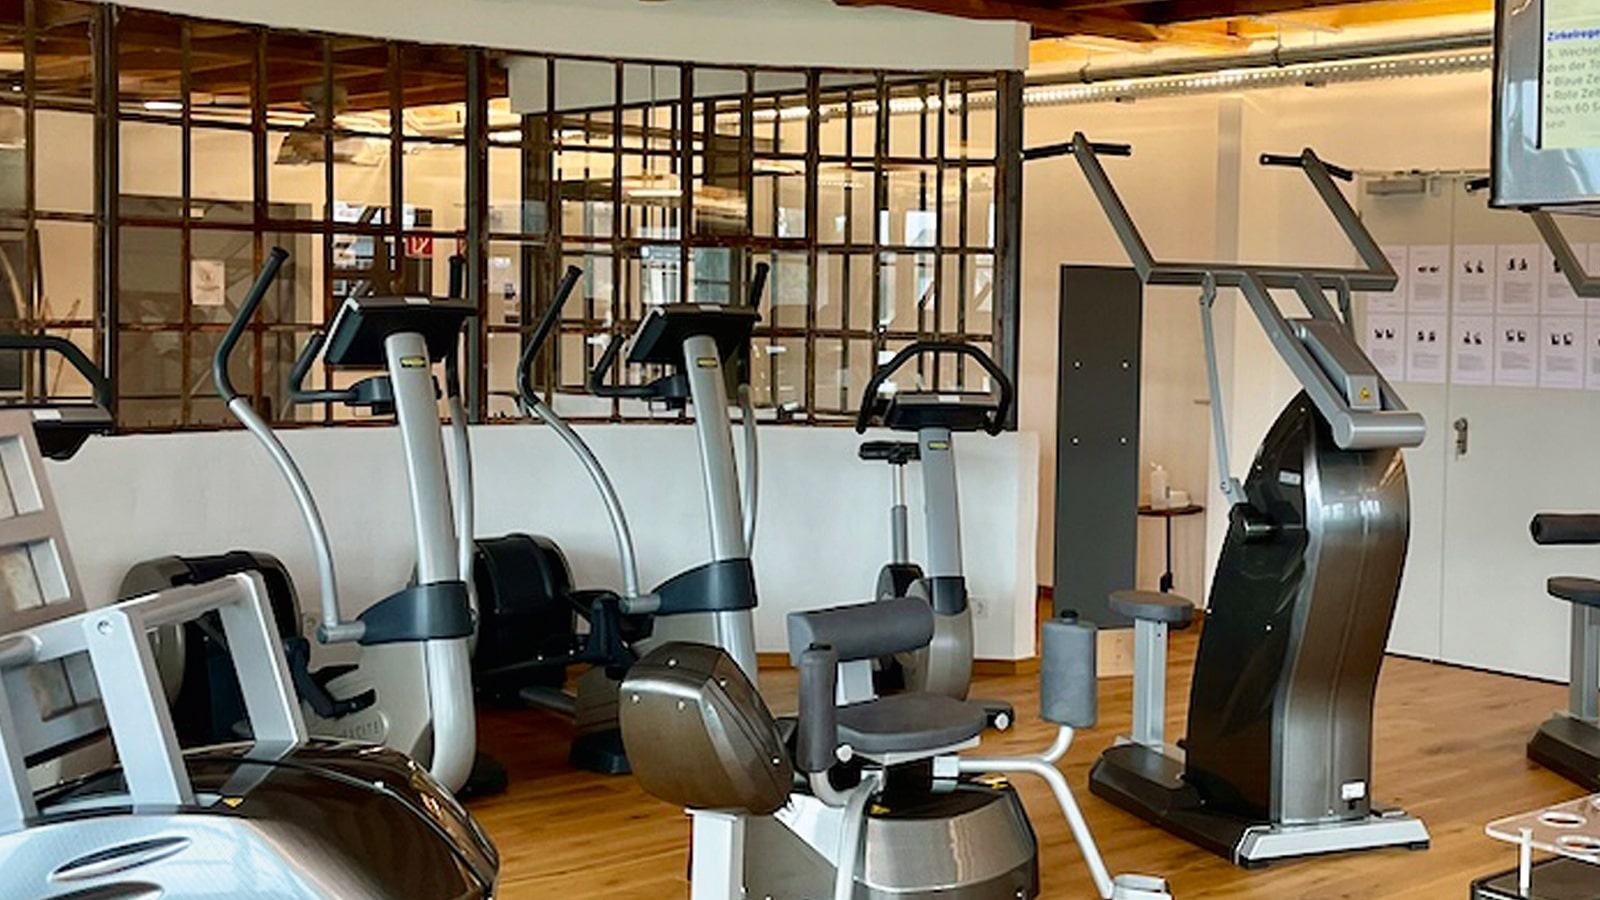 Fitnessstudio-Ausrüstung in einem Raum mit Holzboden und dekorativer Glaswand.